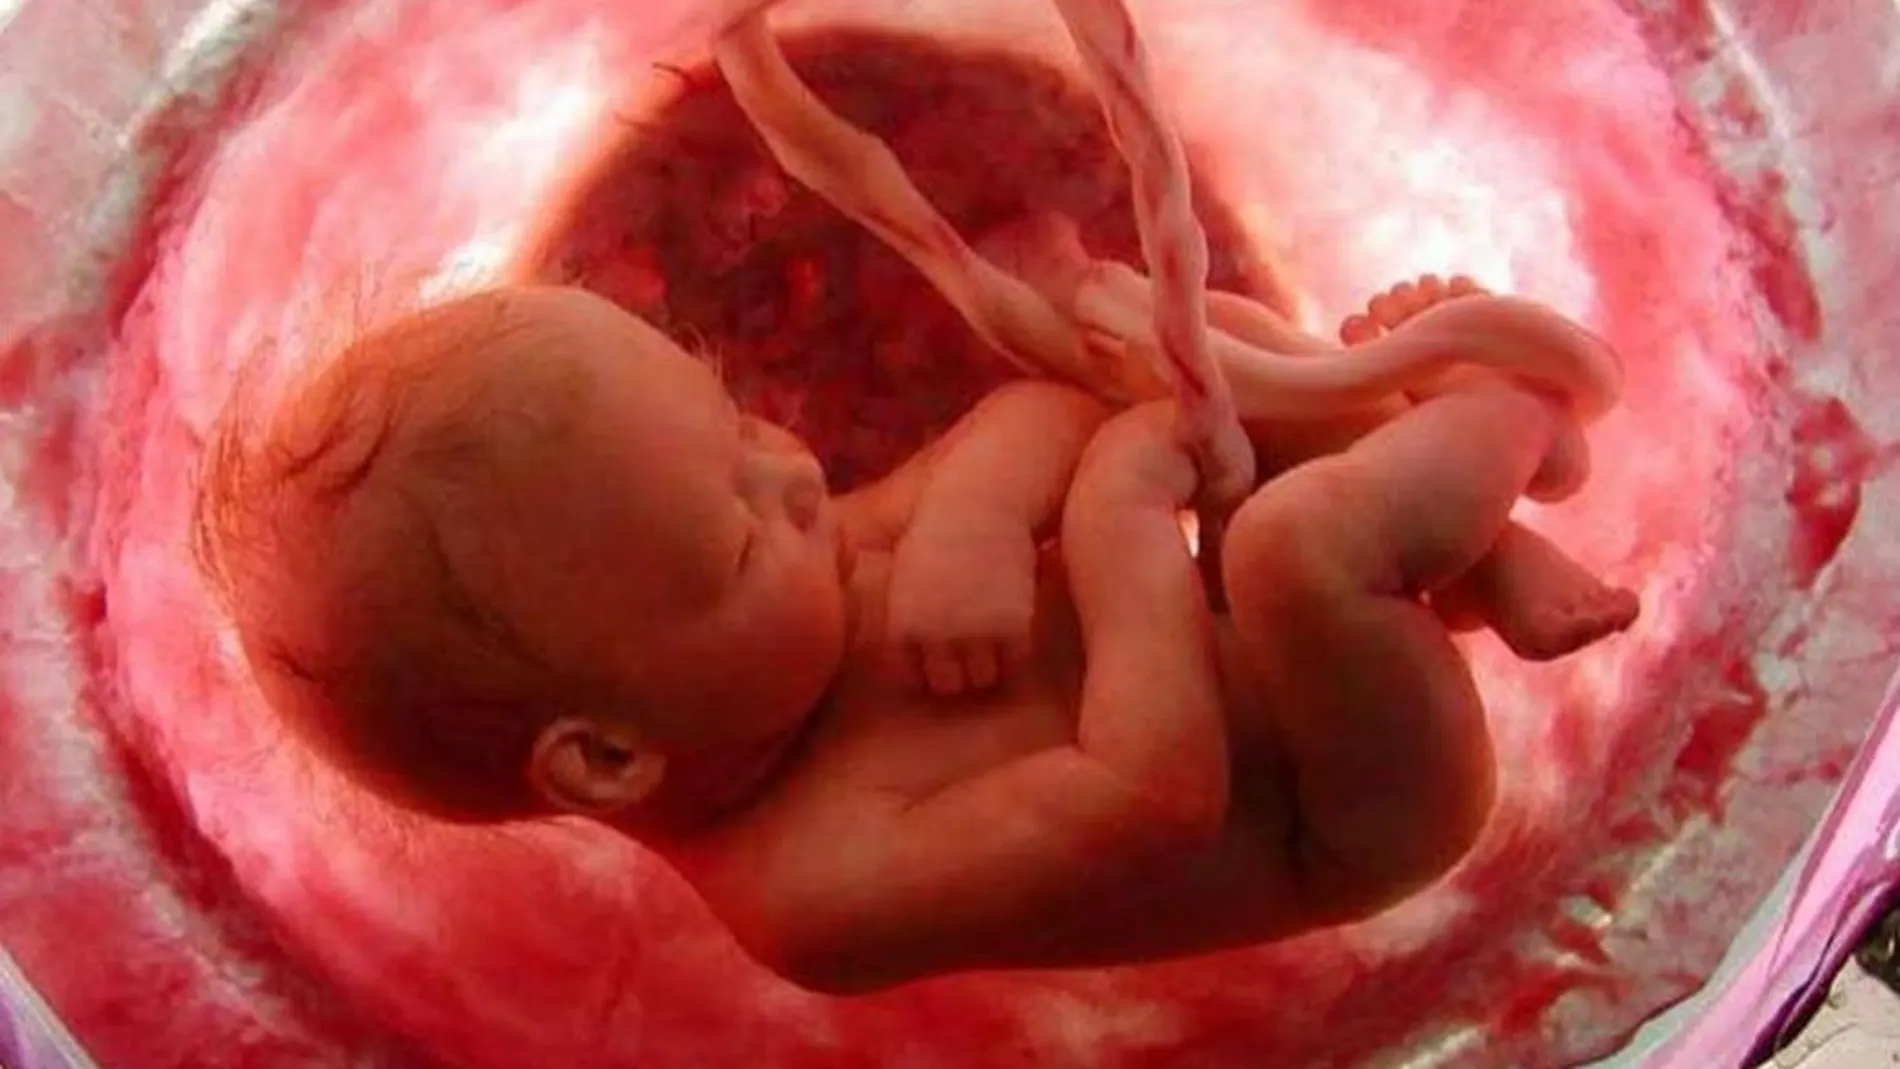 La exposición del feto a contaminantes reduce la fertilidad de tres generaciones, según un estudio